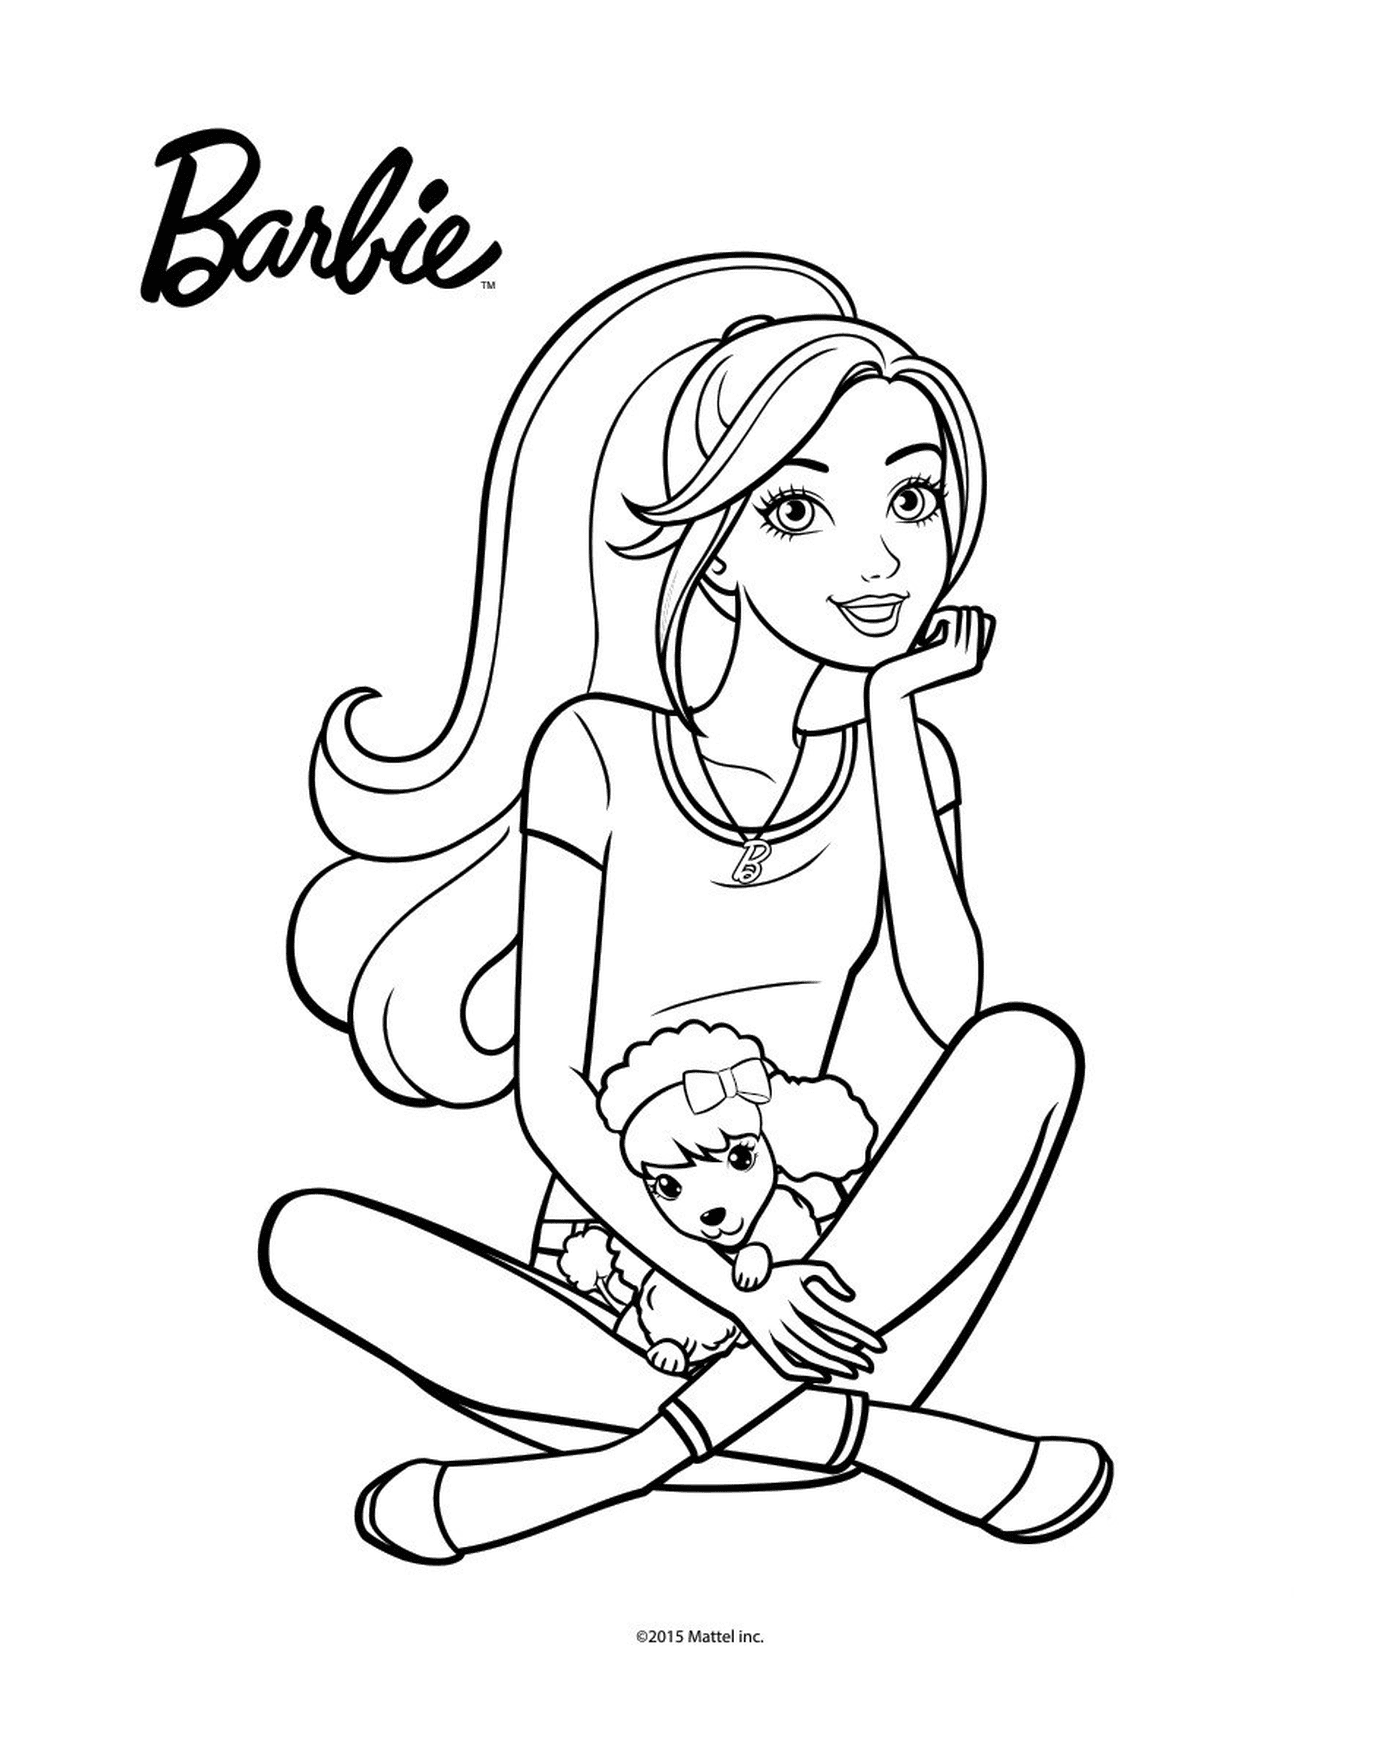   Barbie assise par terre tenant une poupée 